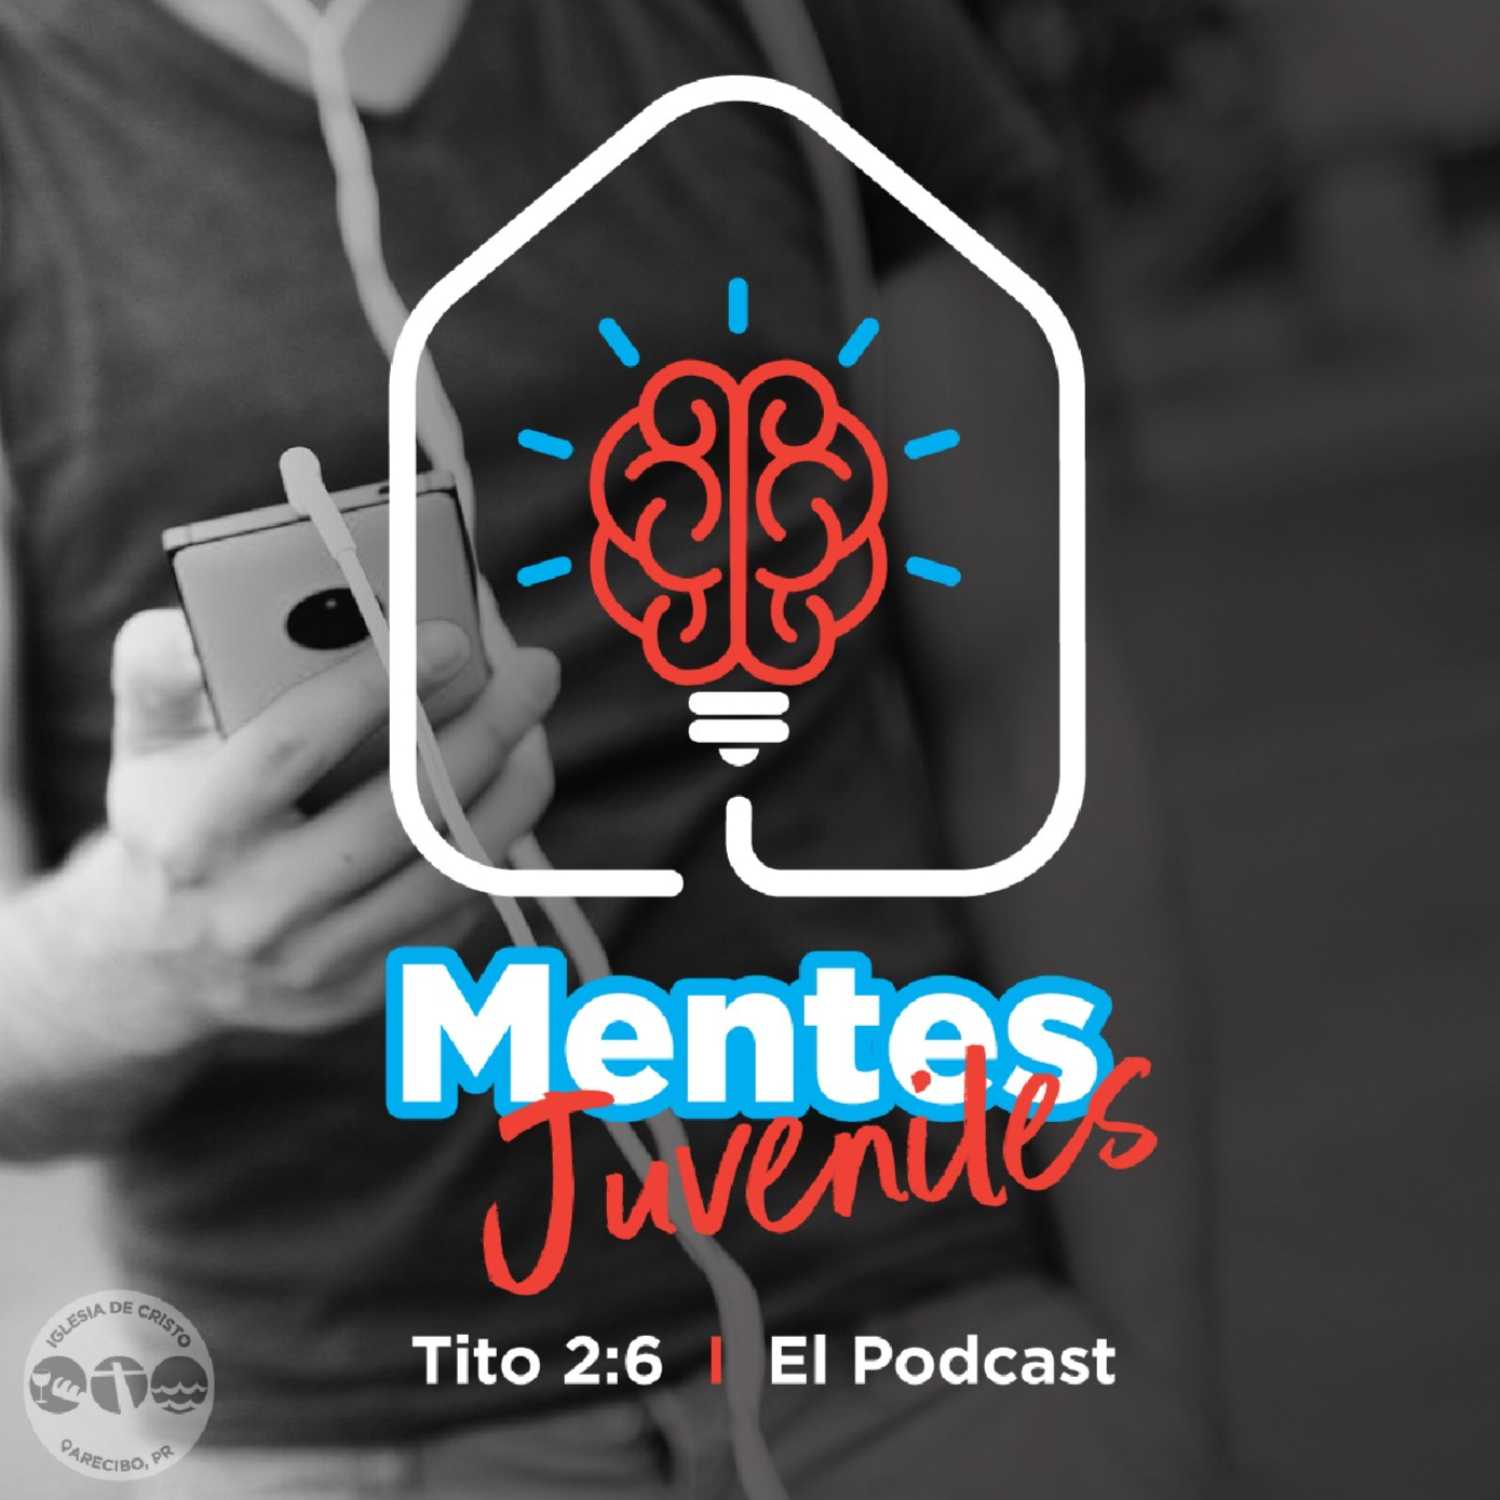 Mentes Juveniles - Tito 2:6 El Podcast